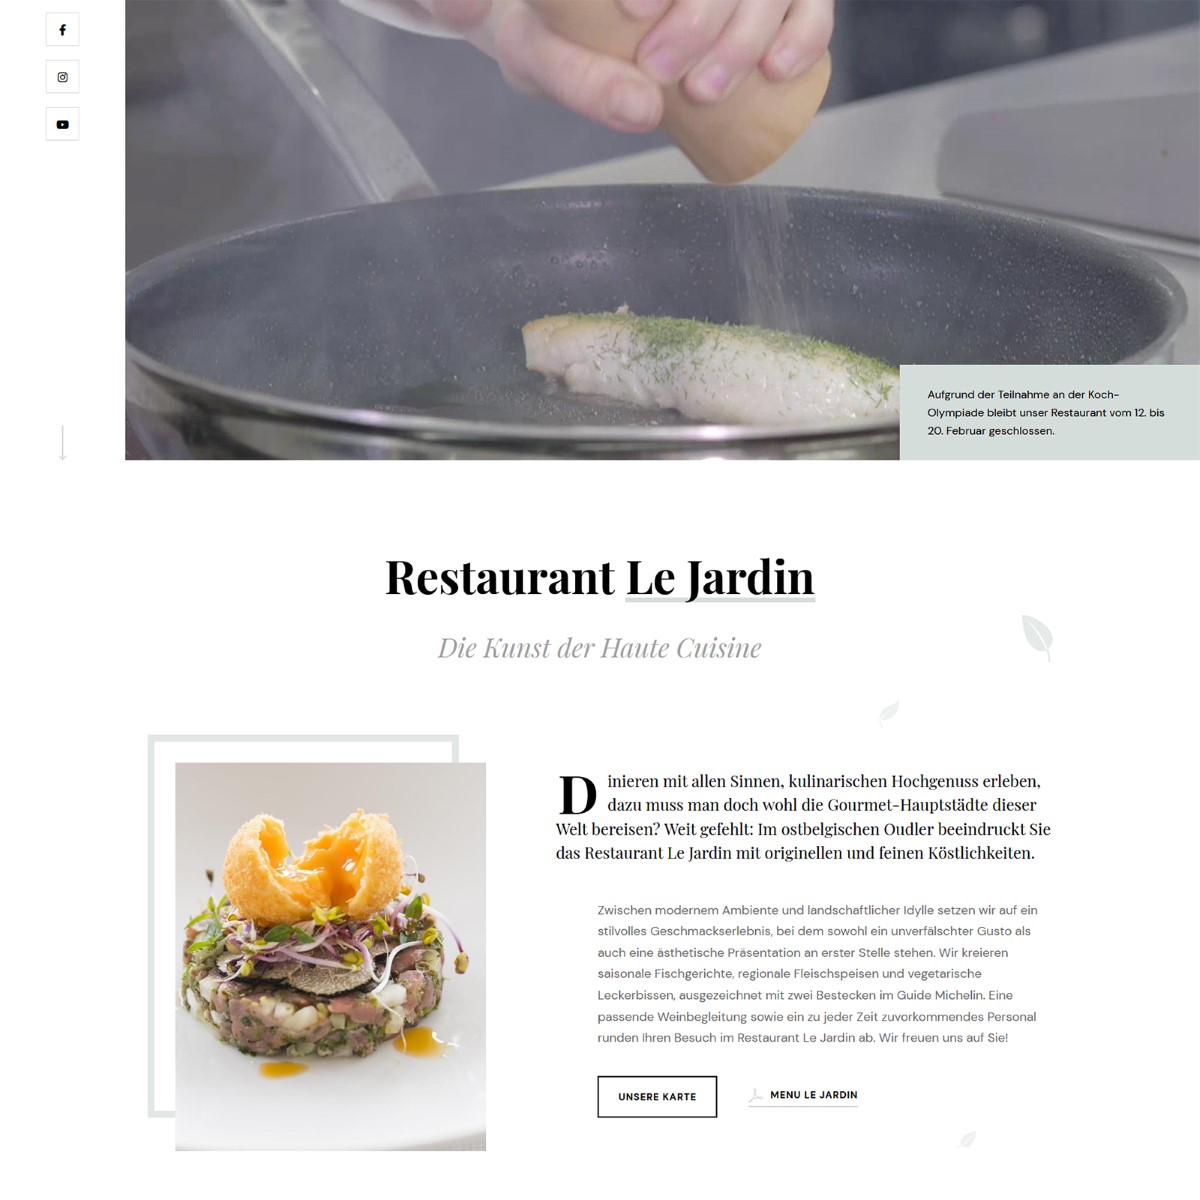 Schlichtes Layout - Das elegante Layout spiegelt die Raffinesse der Speisen im Restaurant Le Jardin wider.